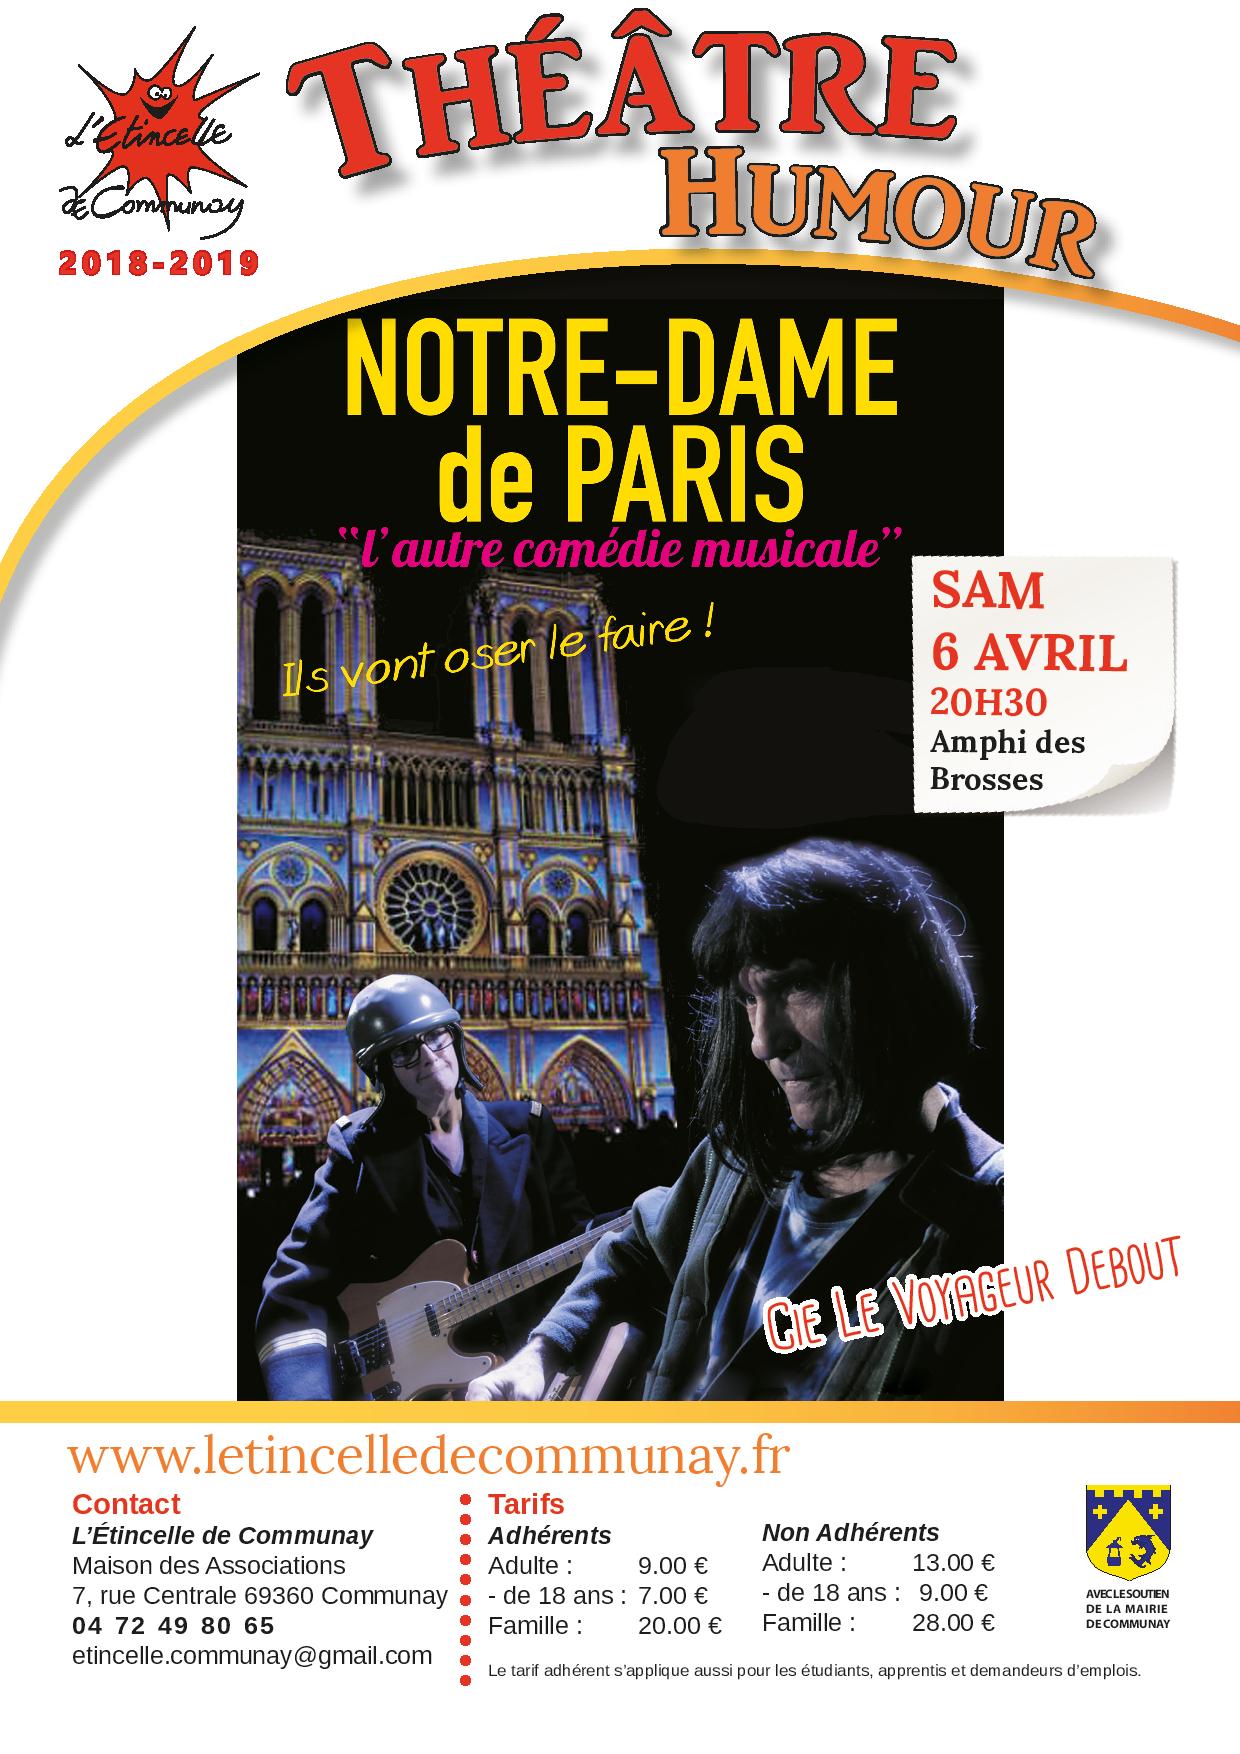 Sam 6 avril : Théâtre humour “Notre Dame de Paris, l’autre comédie musicale”